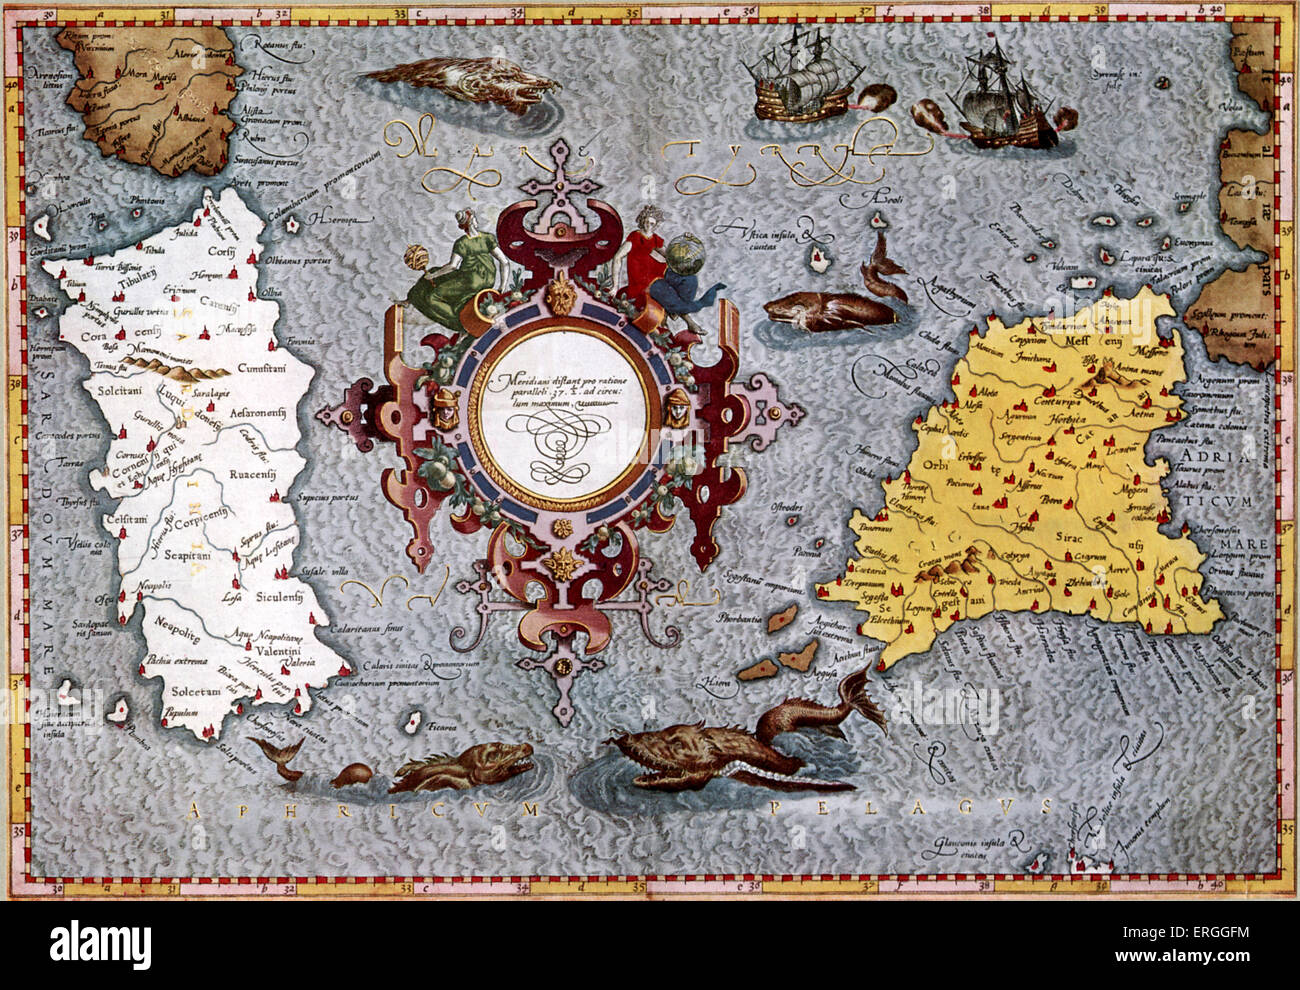 La carte de la Sardaigne et de la Sicile par Mercator. Publié dans Ptolemy 's 'Geographica', 1584, Cologne. Ptolemaei Alexandrini (titre : Banque D'Images